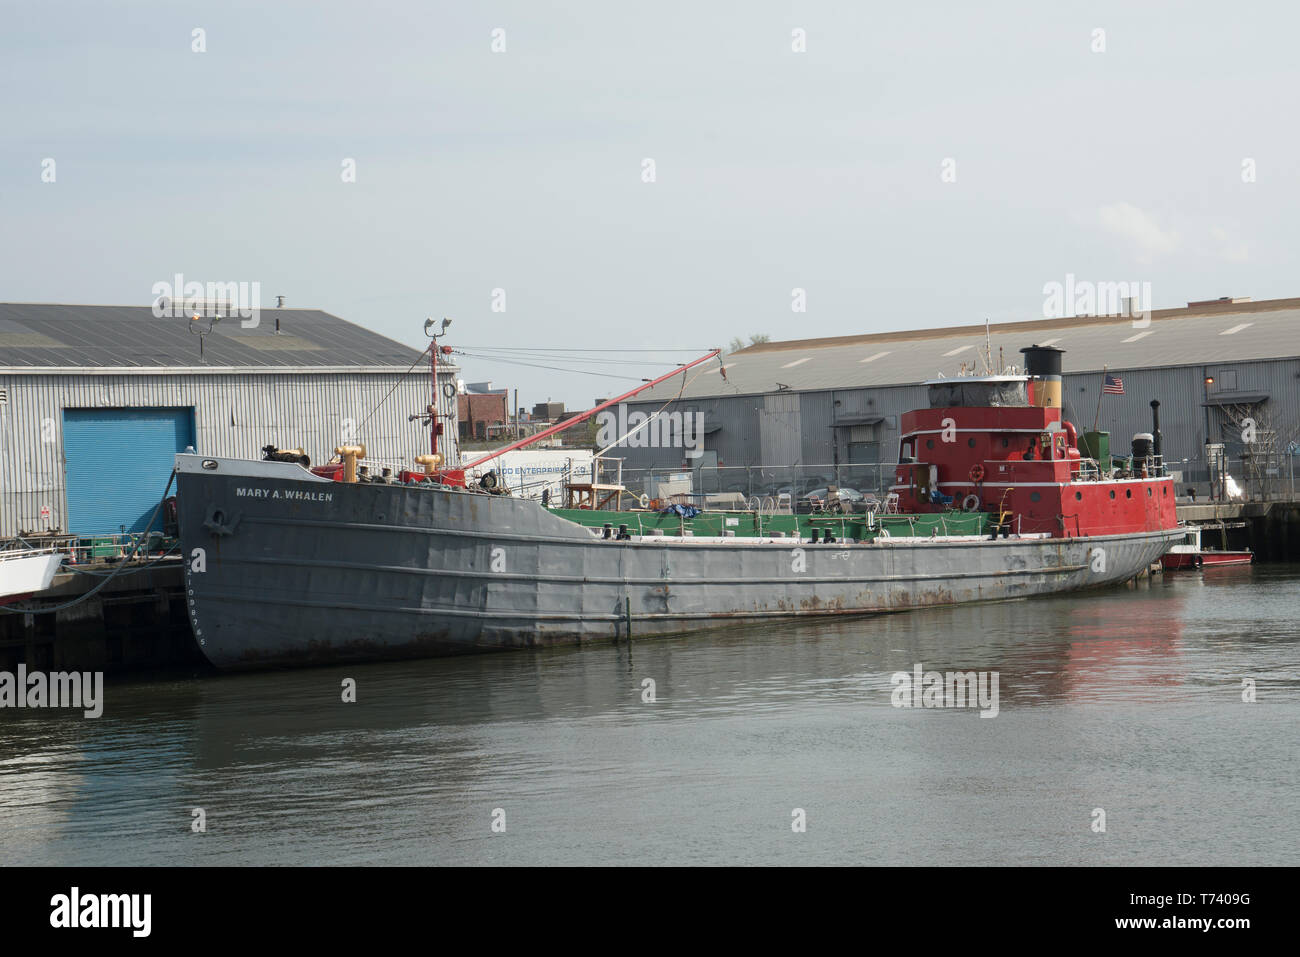 Die Mary A. Whalen, ein Öltanker aus dem Jahr 1938, wurde verwendet, um Kraftstoff Produkte entlang der Ostküste zu versenden. Es ist jetzt in Red Hook, Brooklyn angedockt. Stockfoto